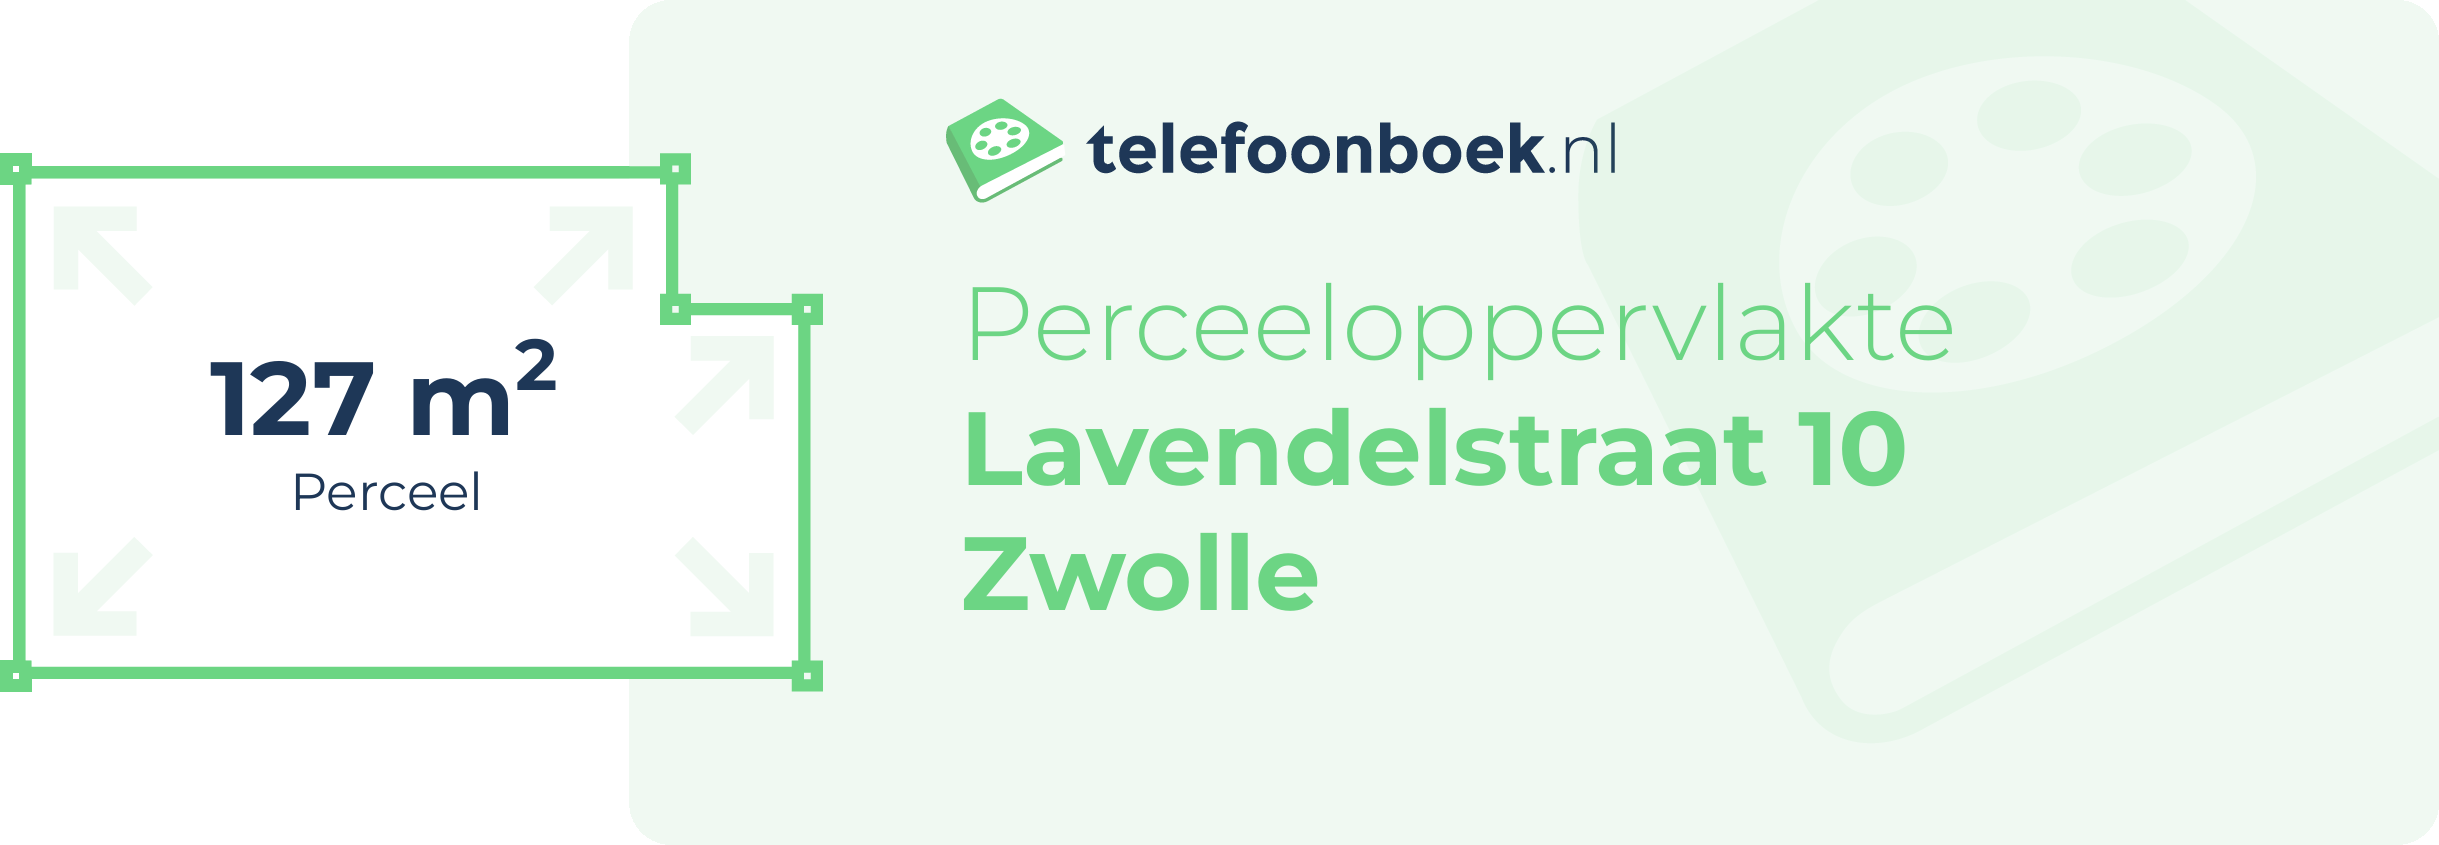 Perceeloppervlakte Lavendelstraat 10 Zwolle